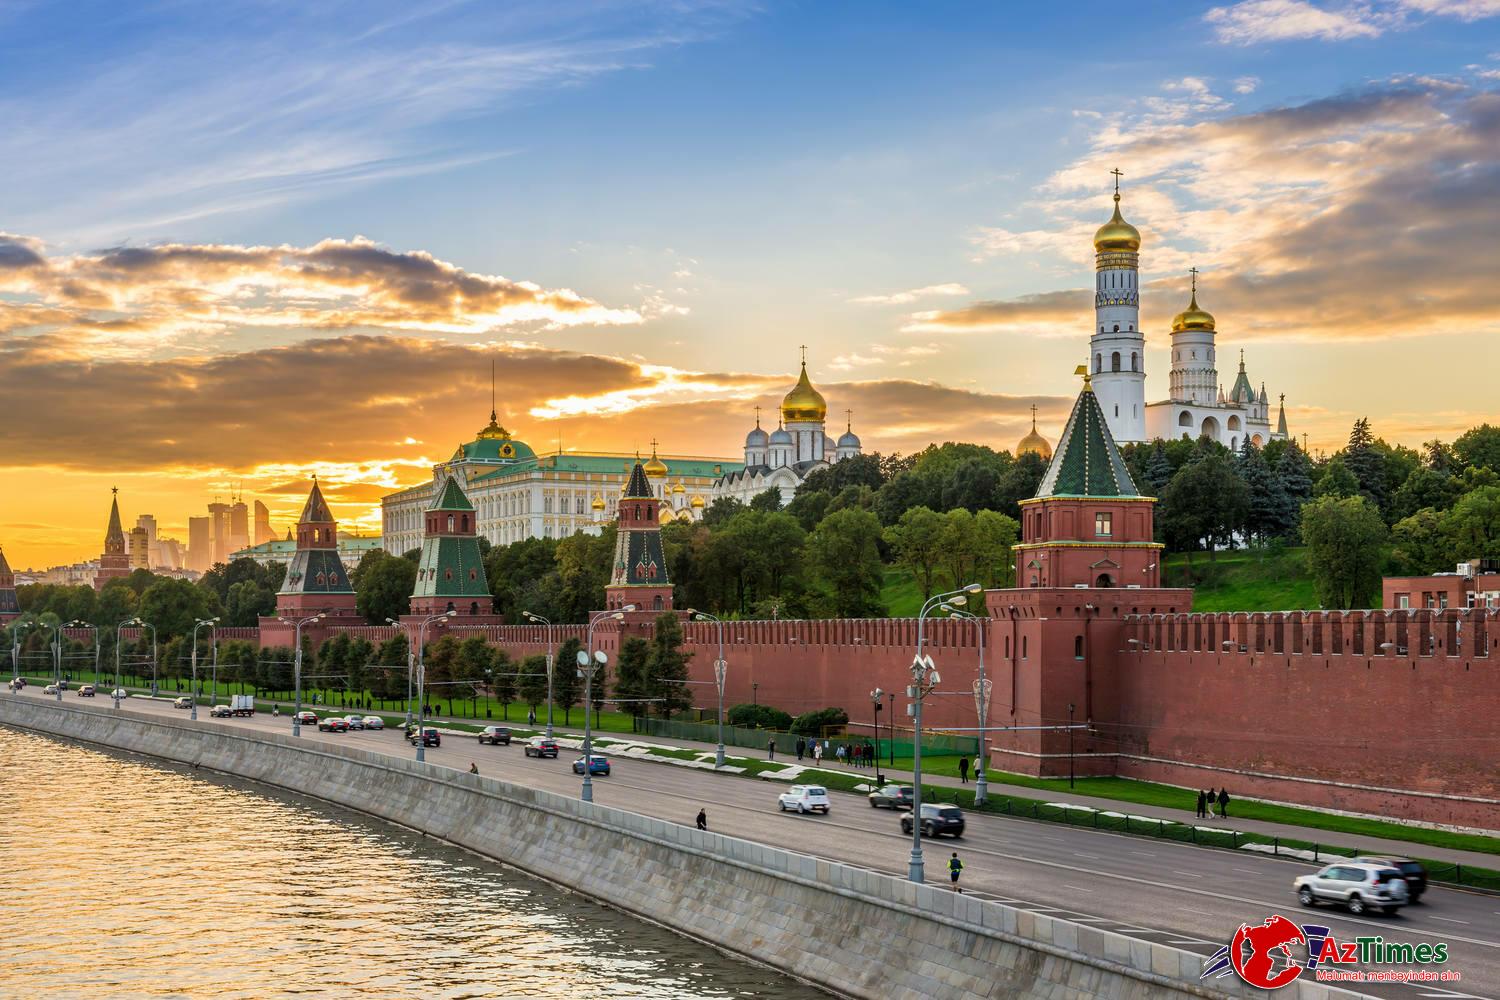 Rusiya Cənubi Qafqazı tərk edir? – Moskva bu varianta üstünlük verəcək